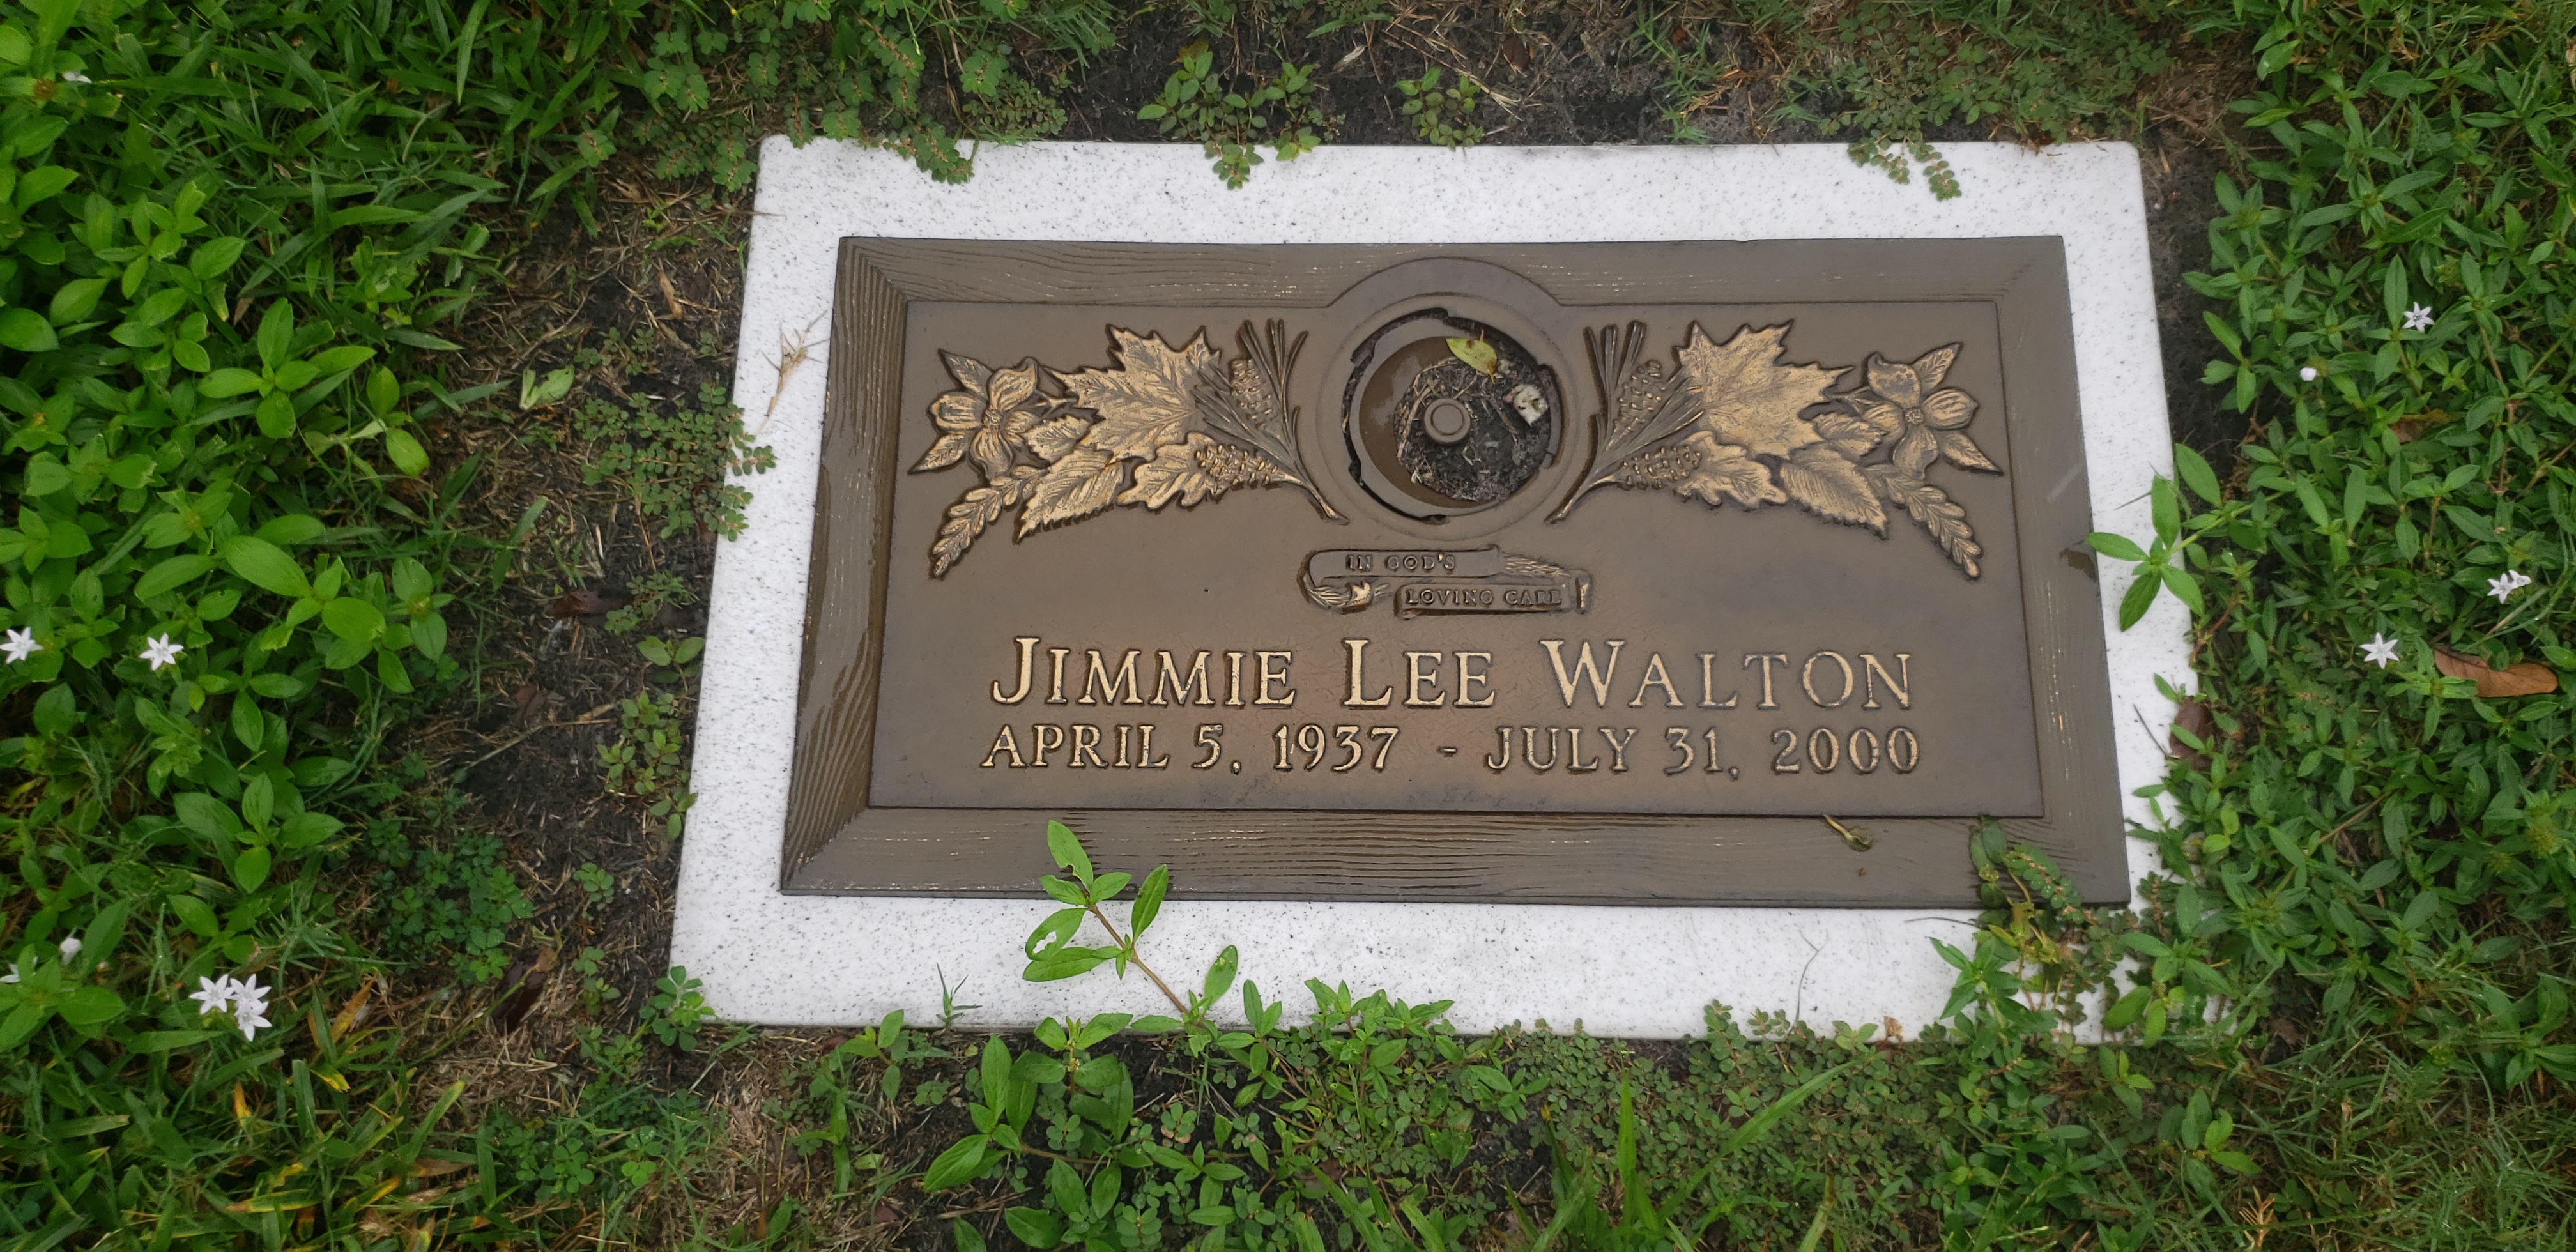 Jimmie Lee Walton